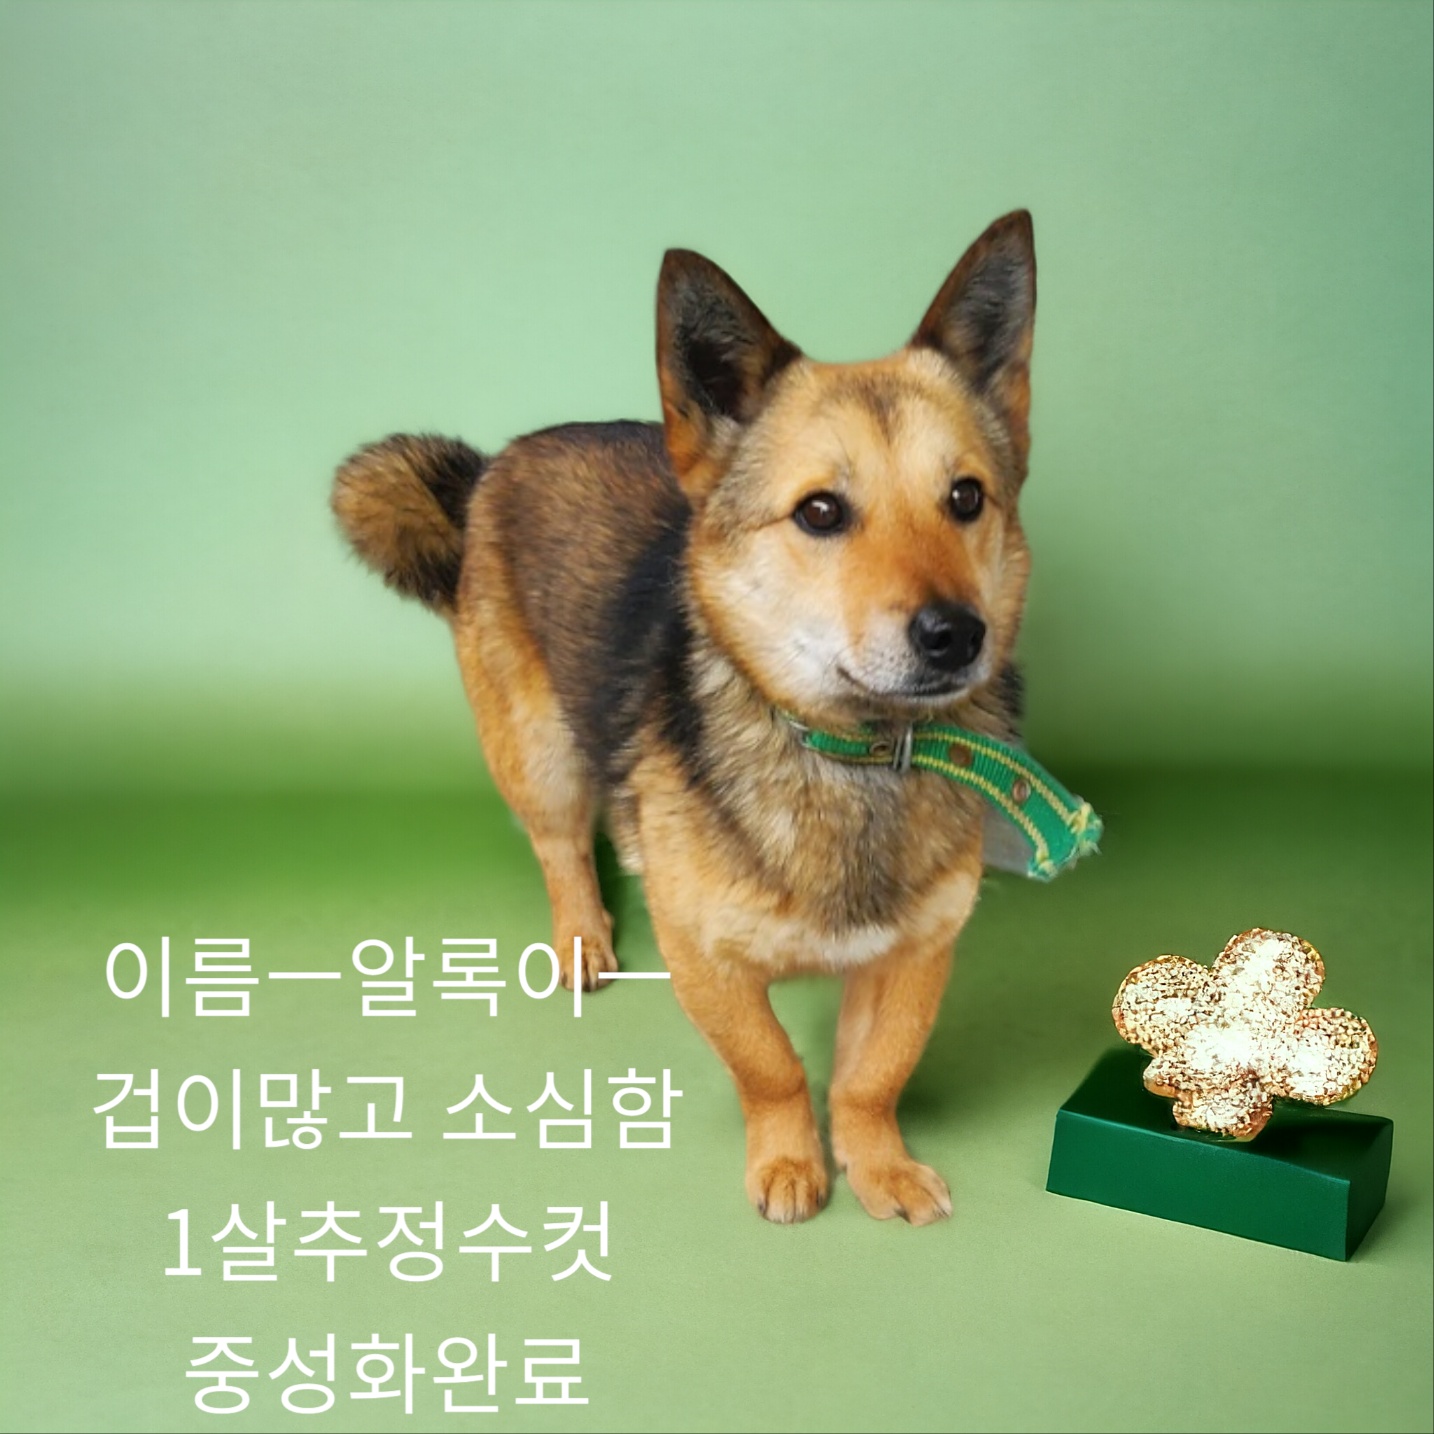 공고 번호가 경북-성주-2024-00167인 믹스견 동물 사진